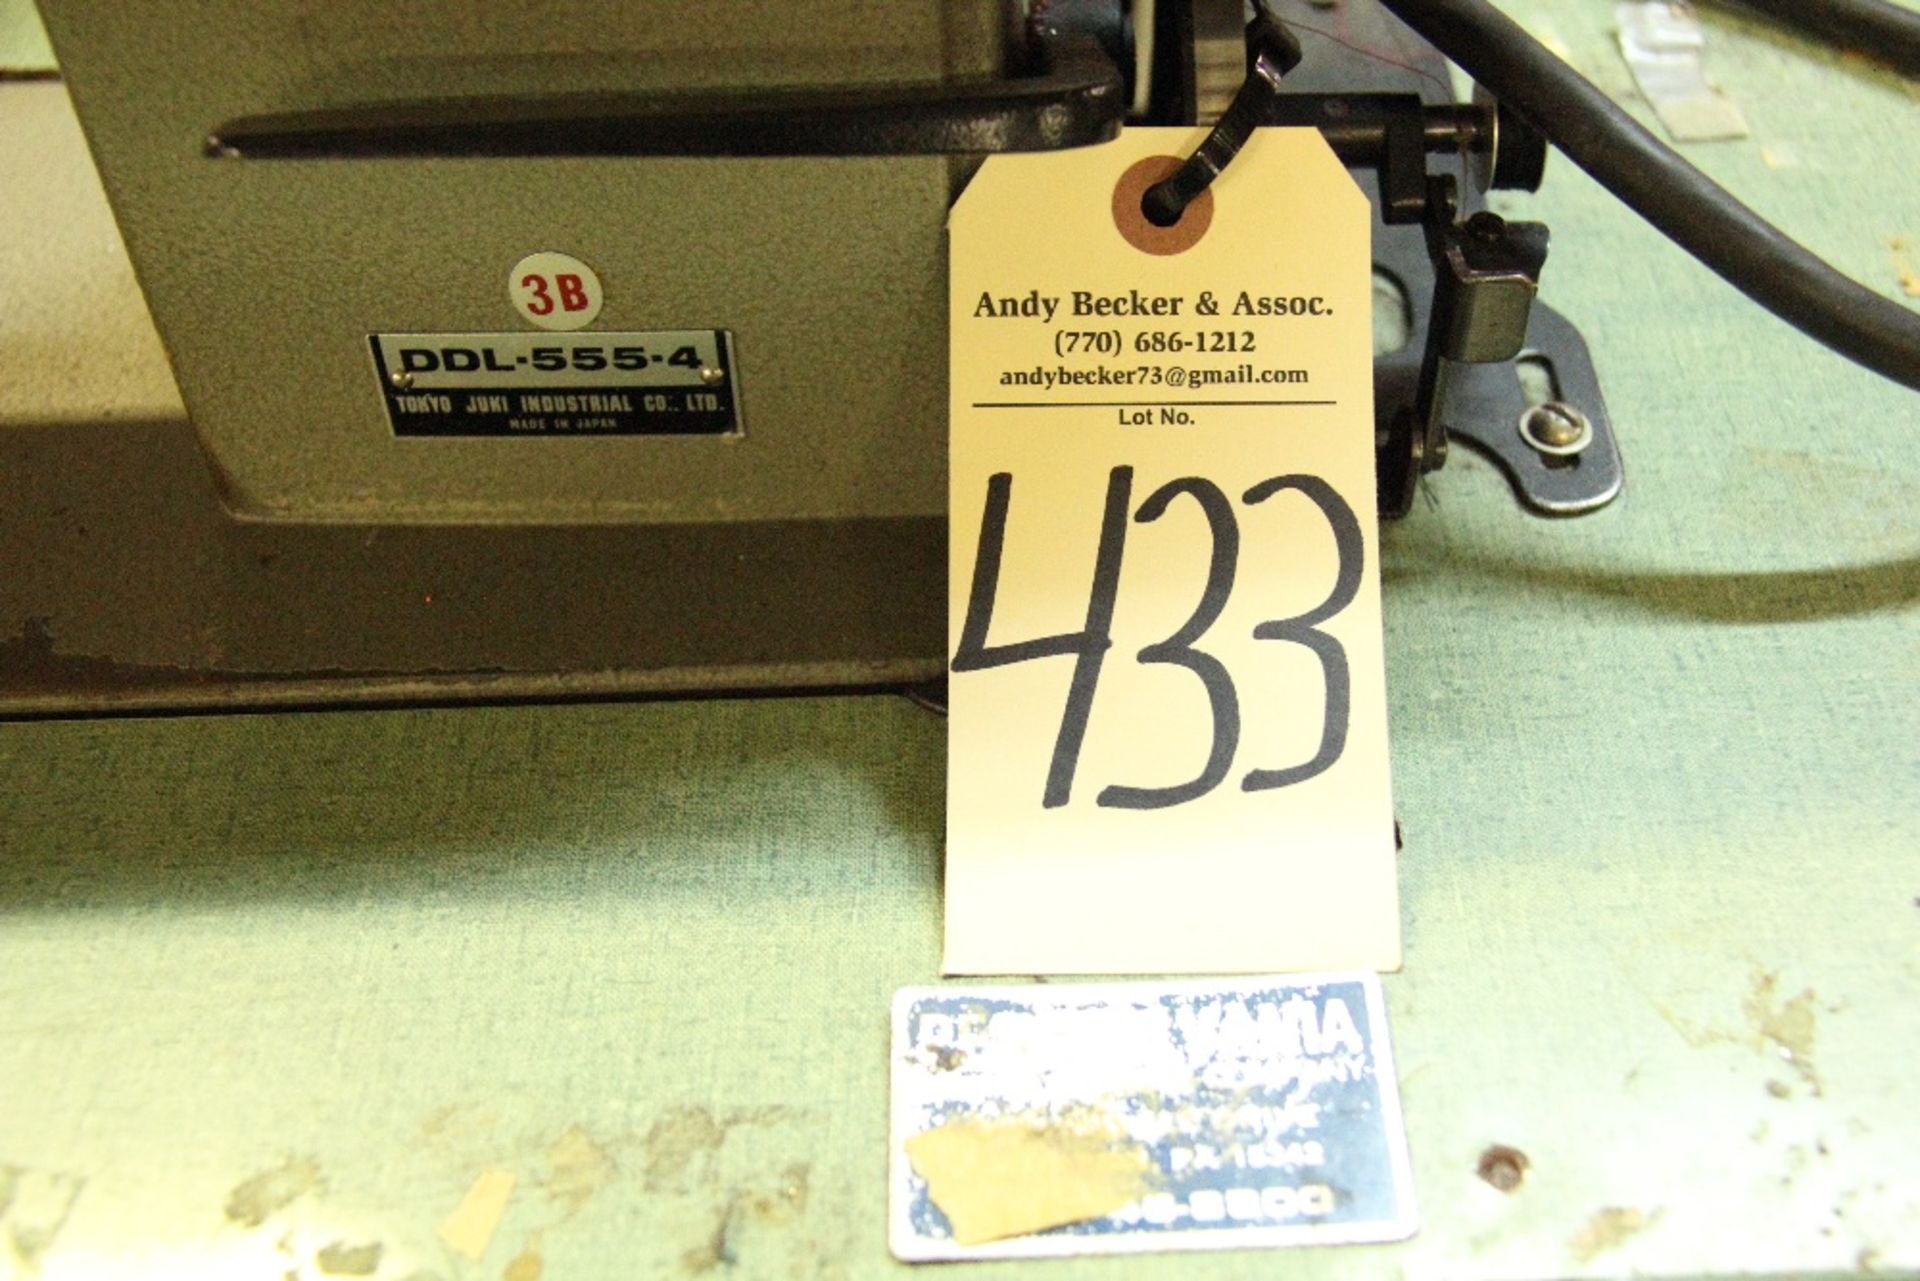 Juki DDL-555-4 Single Needle Lockstitch Sewing Machine - Image 4 of 4